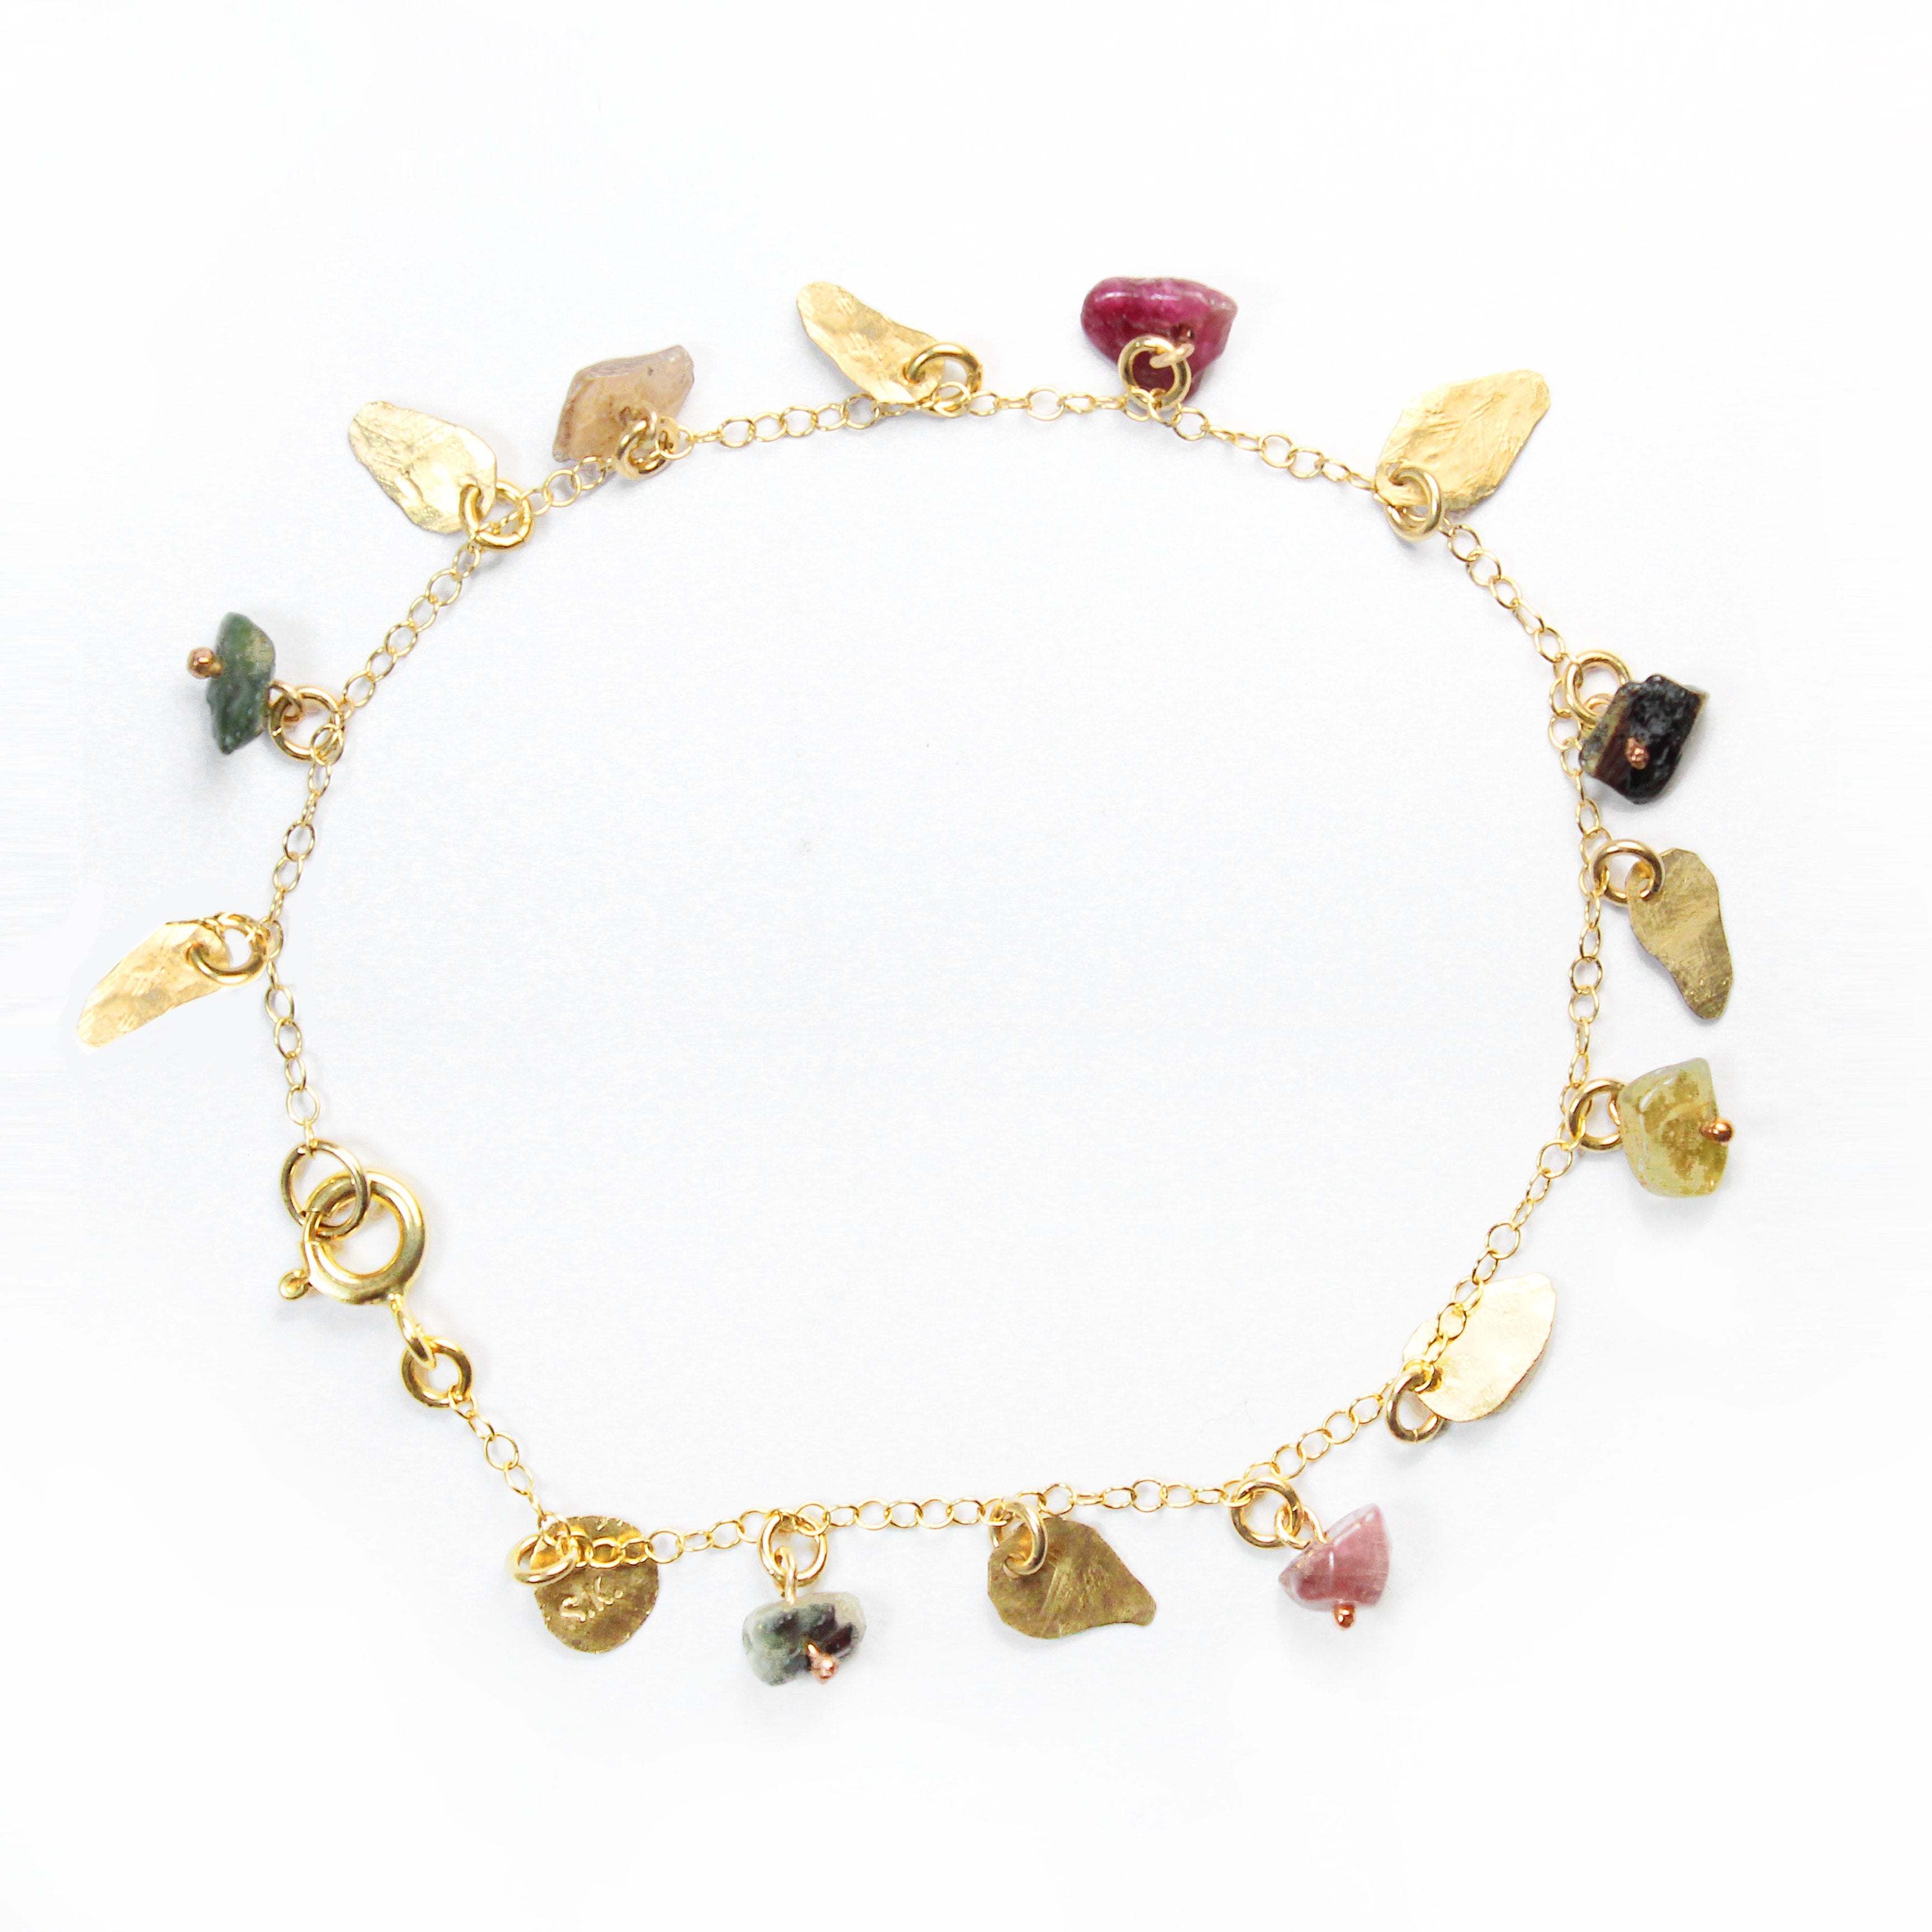 Gold filled Leaves & Tourmaline Gemstones Elegant Bracelet - Shulamit Kanter